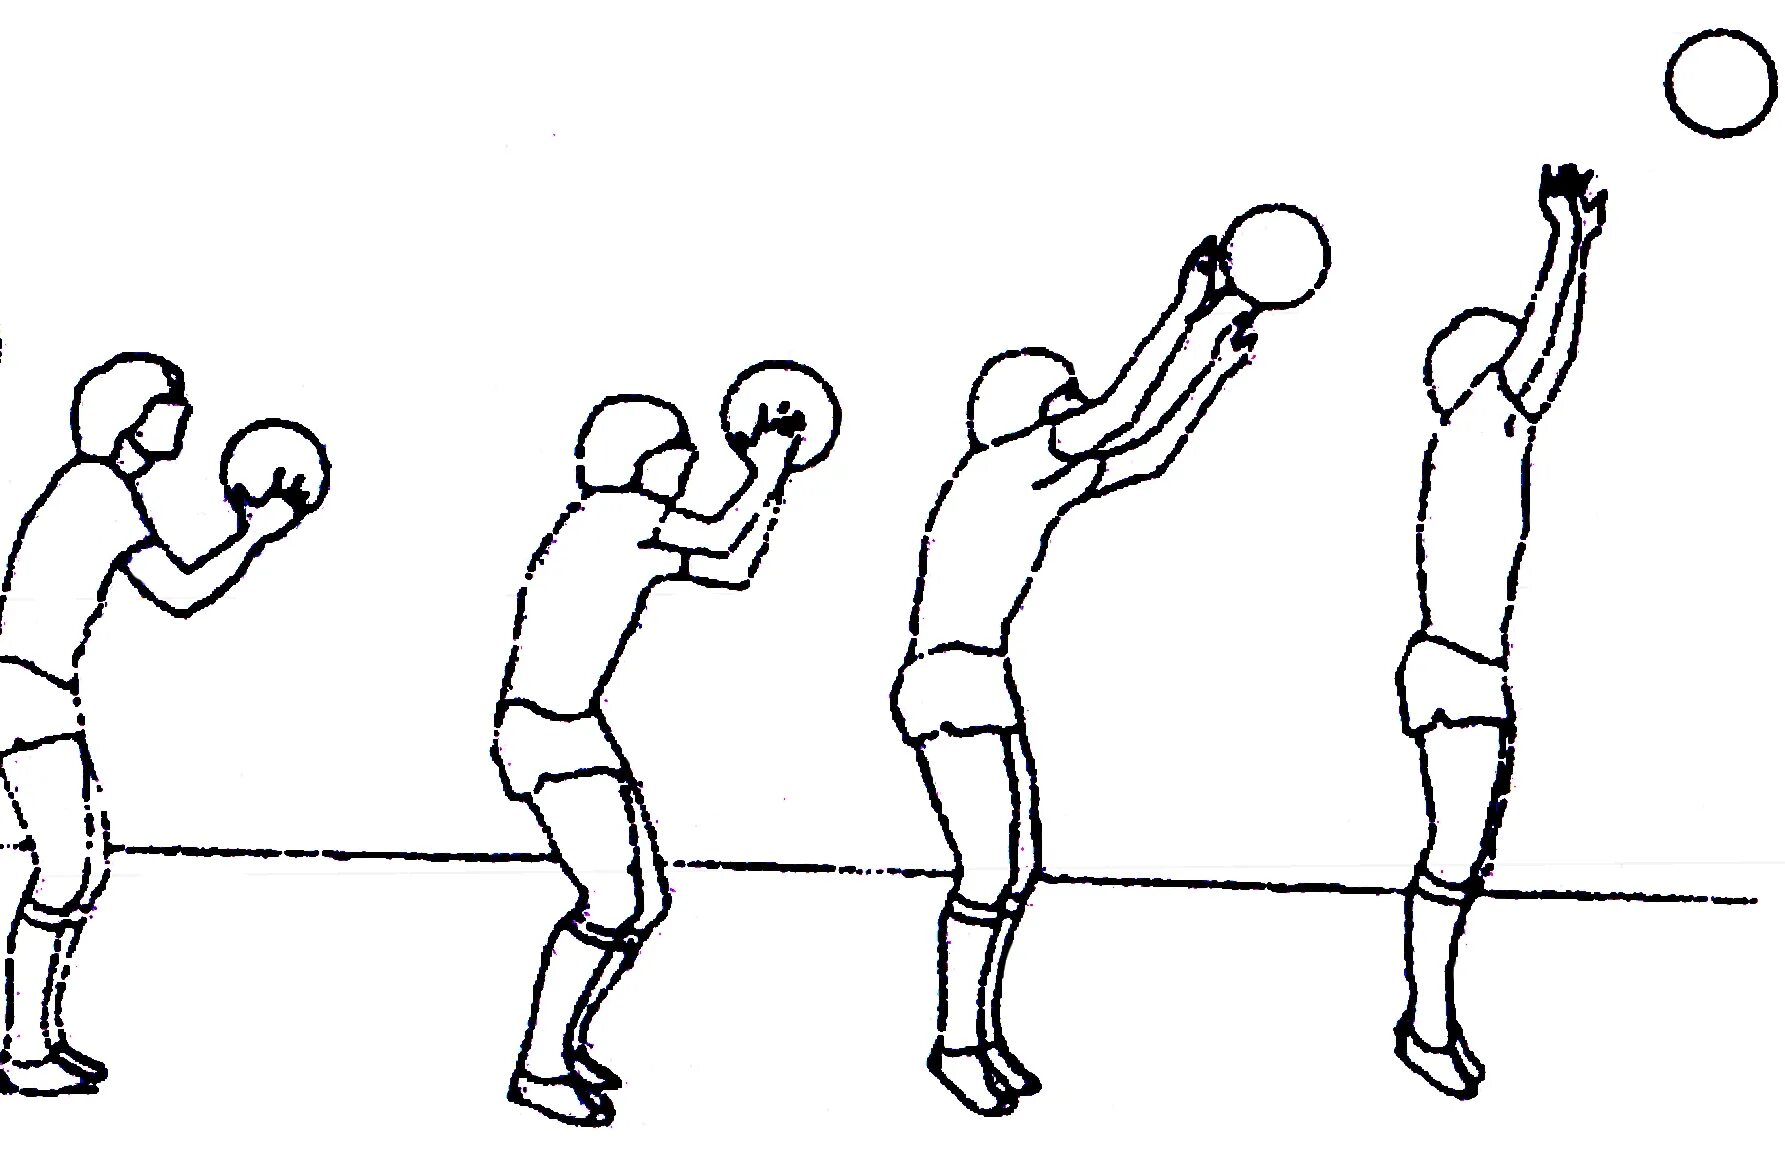 Ведение мяча бросок в кольцо. Техника броска мяча сбоку. Бросок мяча сбоку без отскока выполнение. Бросок мяча снизу в корзину баскетбол. Бросок мяча сбоку двумя руками.